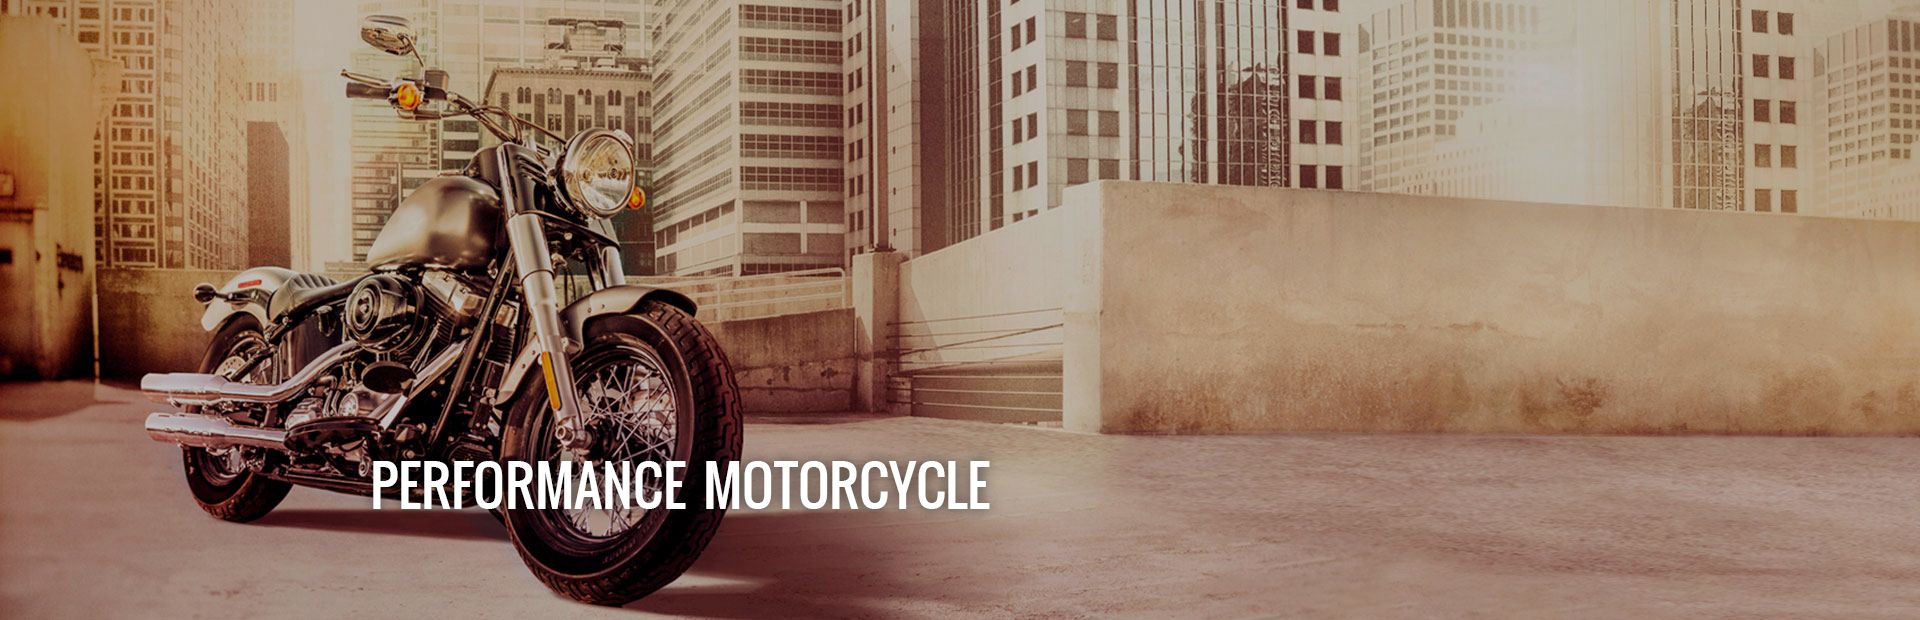 Performance Motorcycle Desktop Header